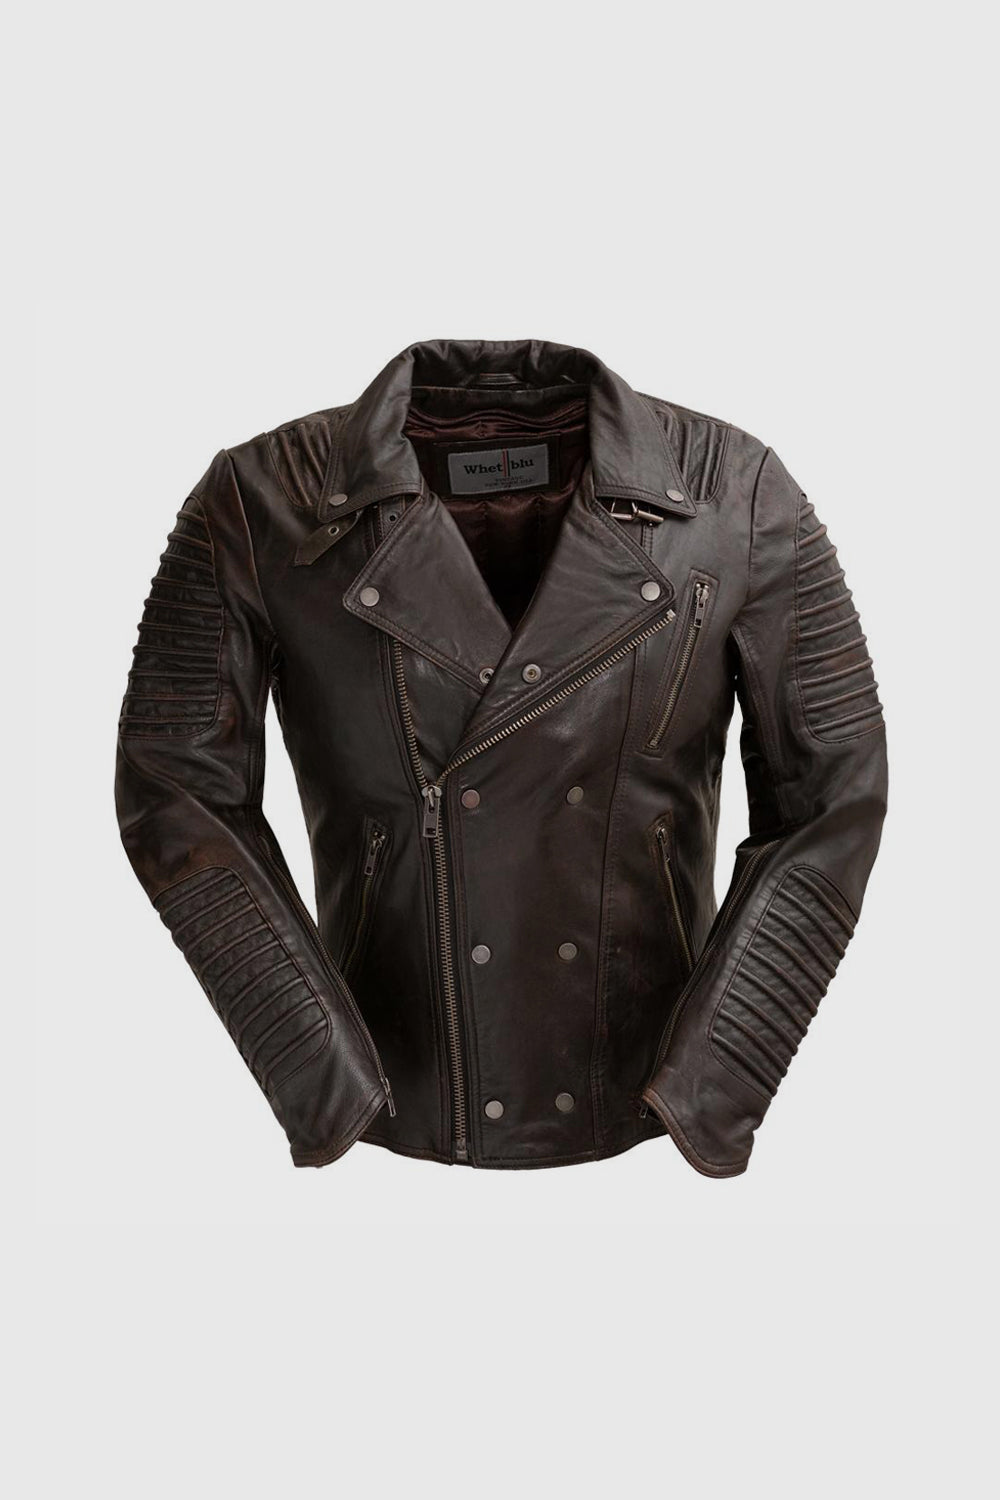 Brooklyn Mens Lambskin Leather Jacket Black Cognac Men's Motorcycle style Jacket Whet Blu NYC S Black Cognac 